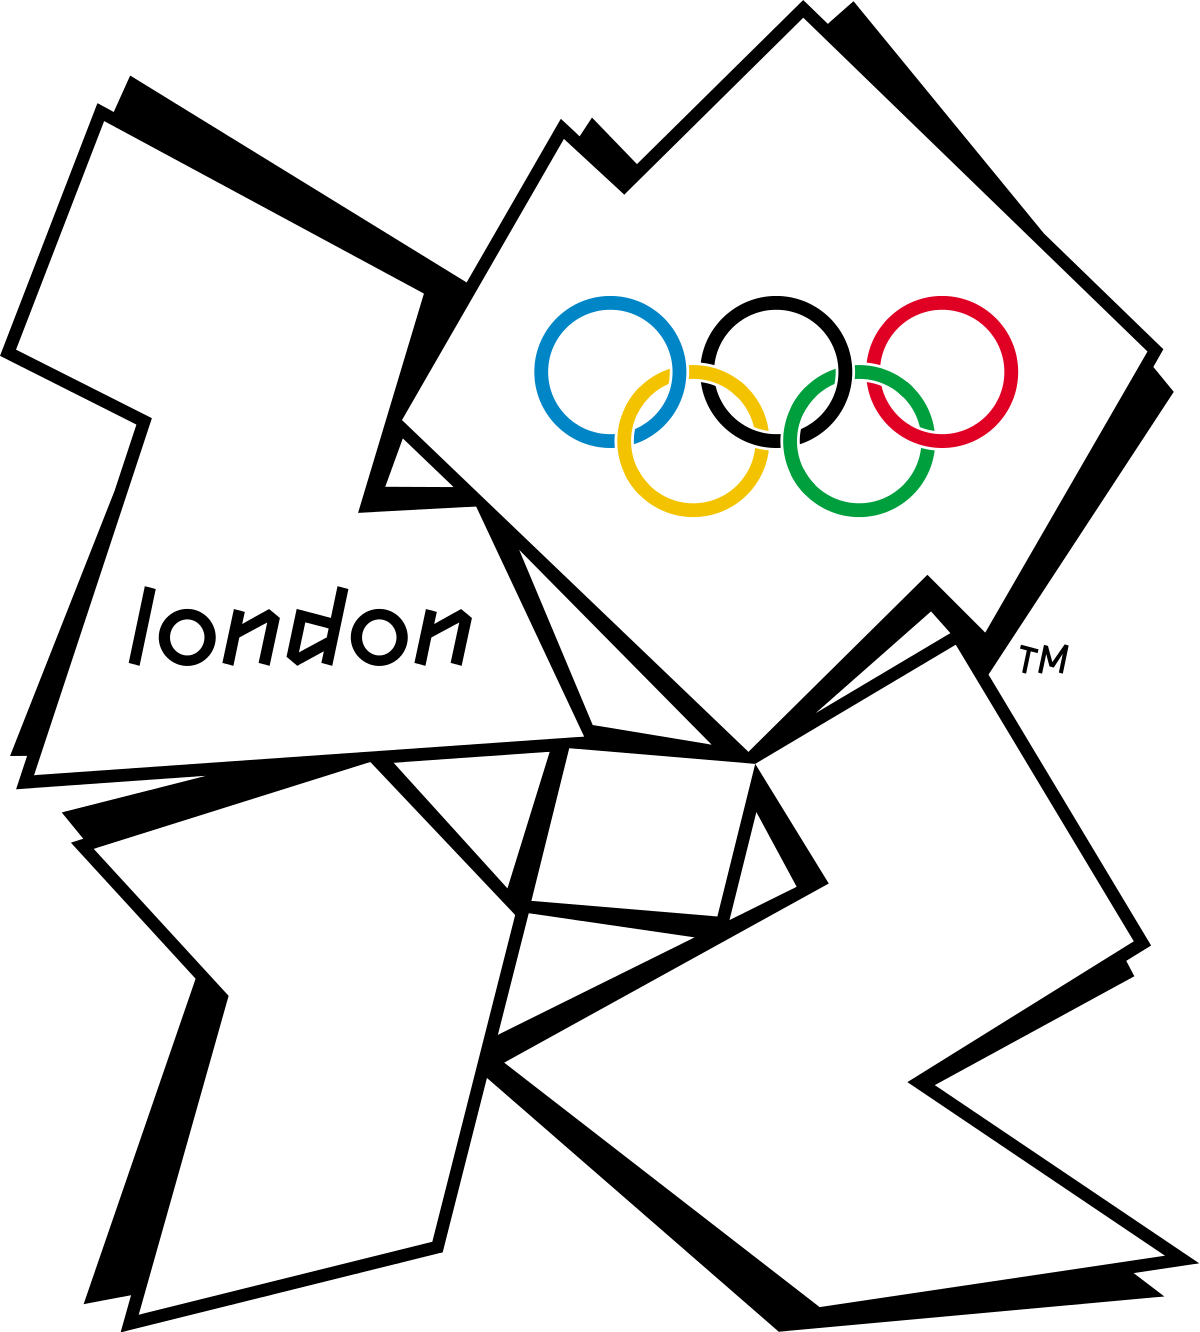 London 2012 Olympics Logo - 2012 Summer Olympics